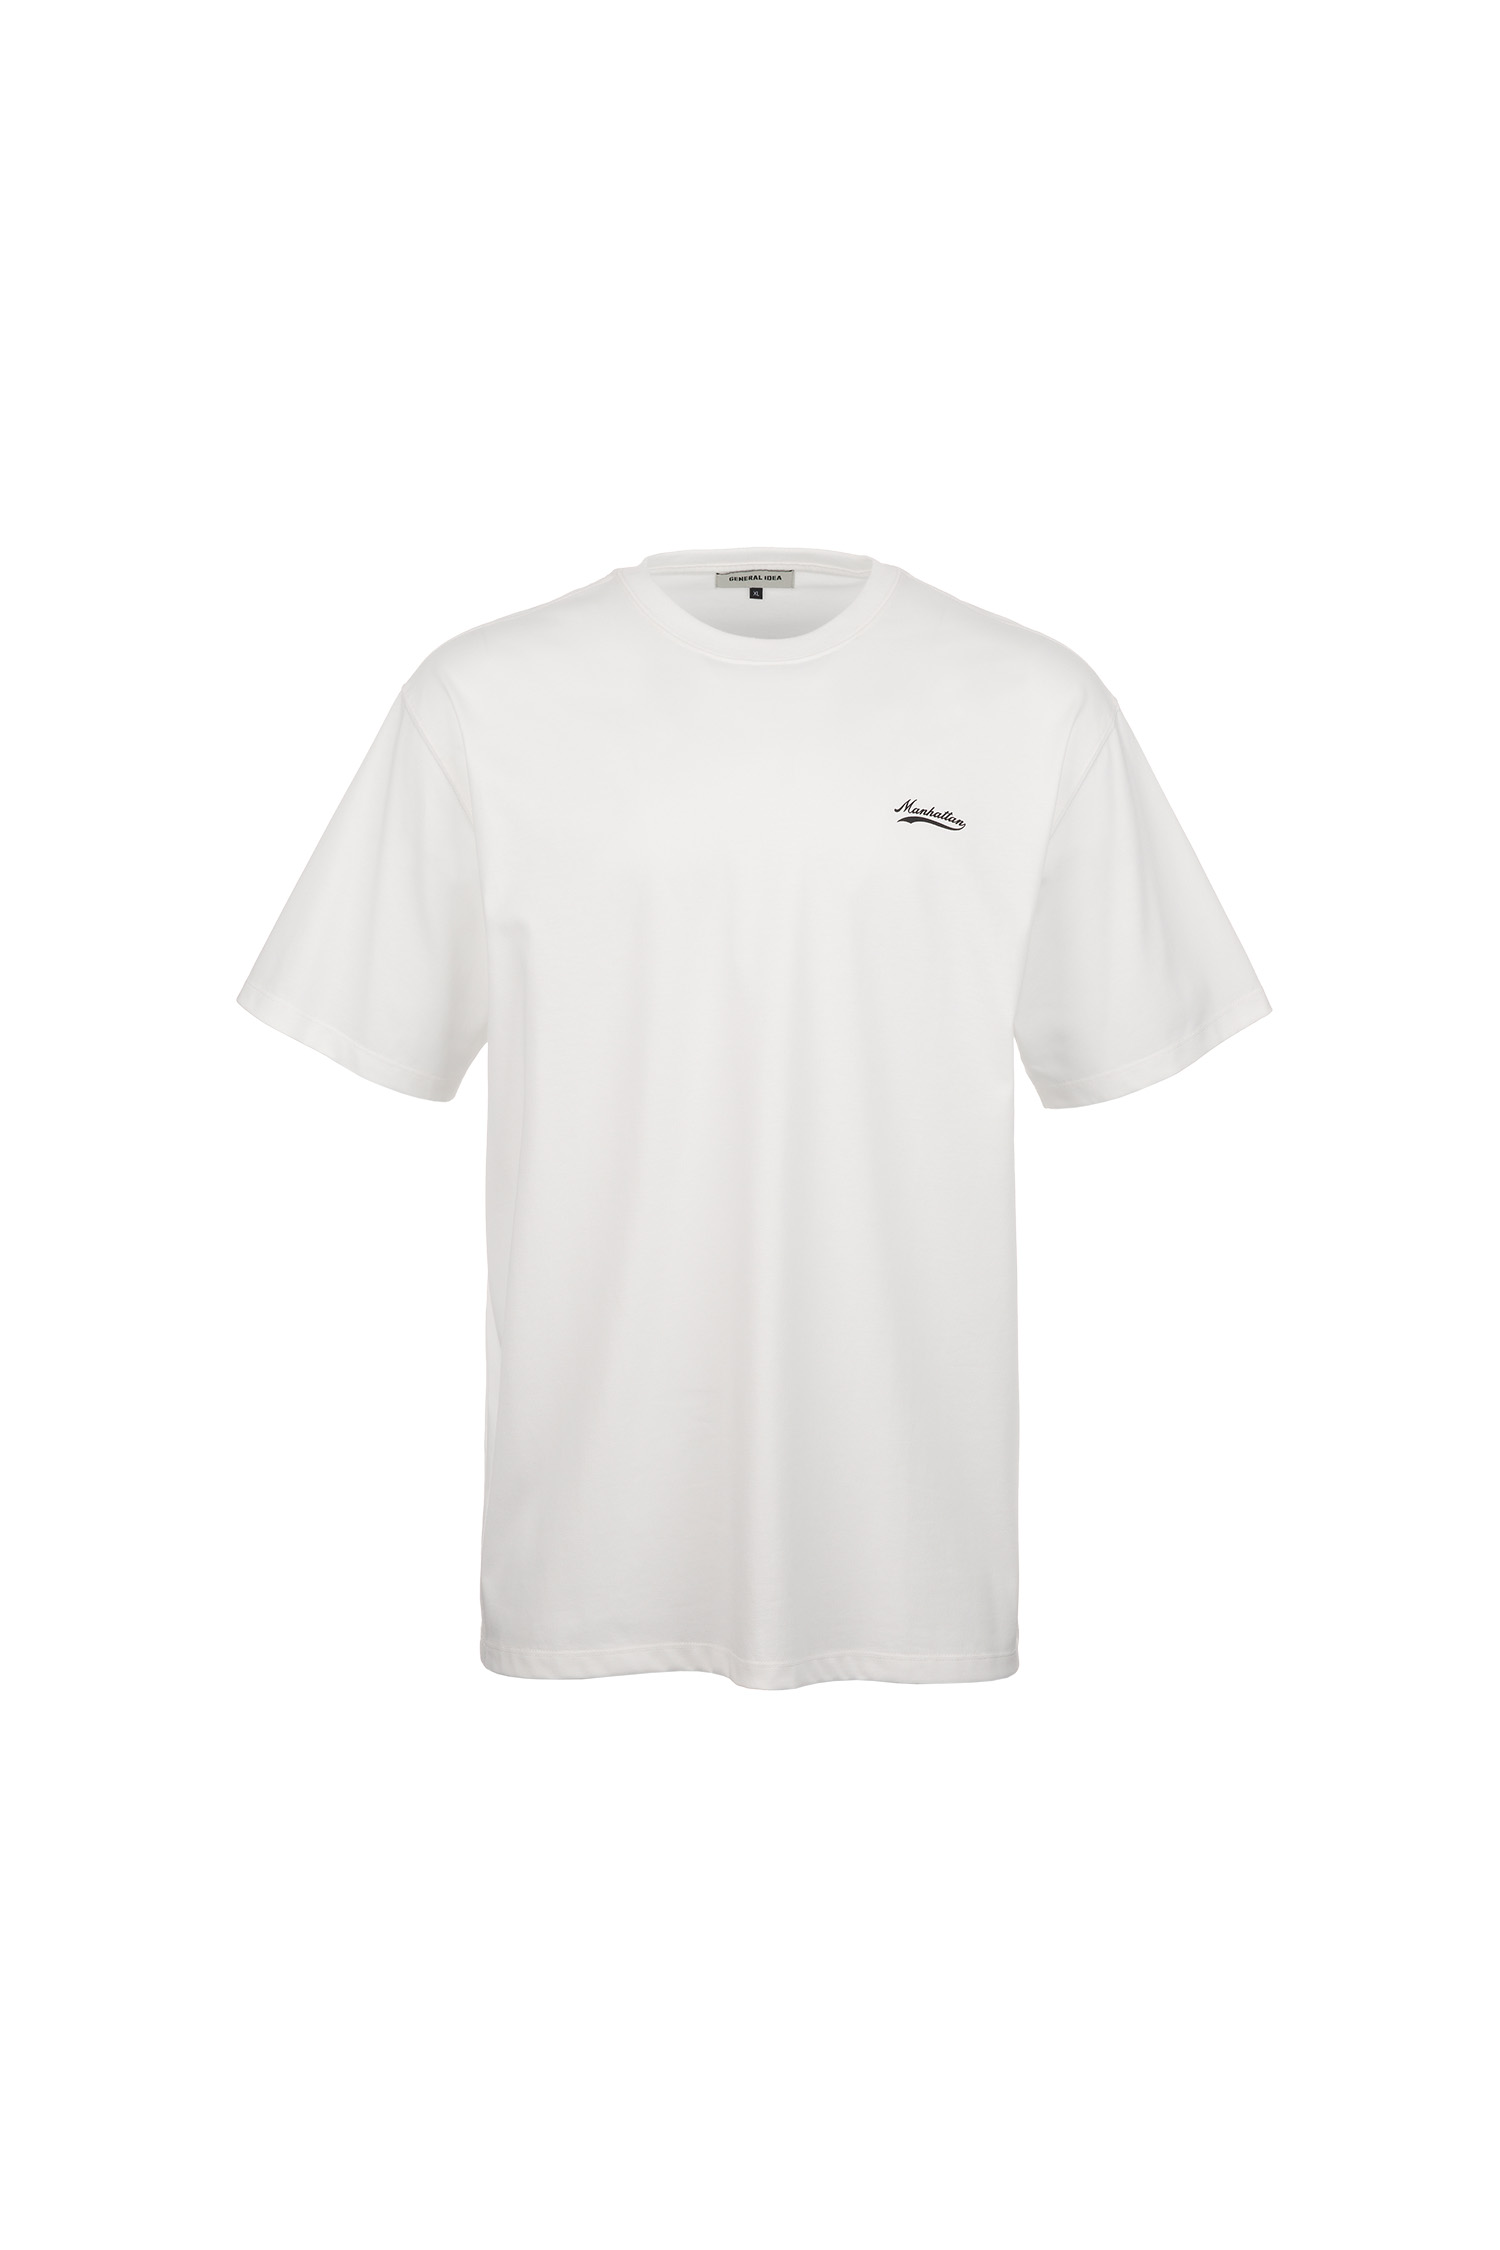 UNISEX マンハッタン半袖Tシャツ [WHITE]